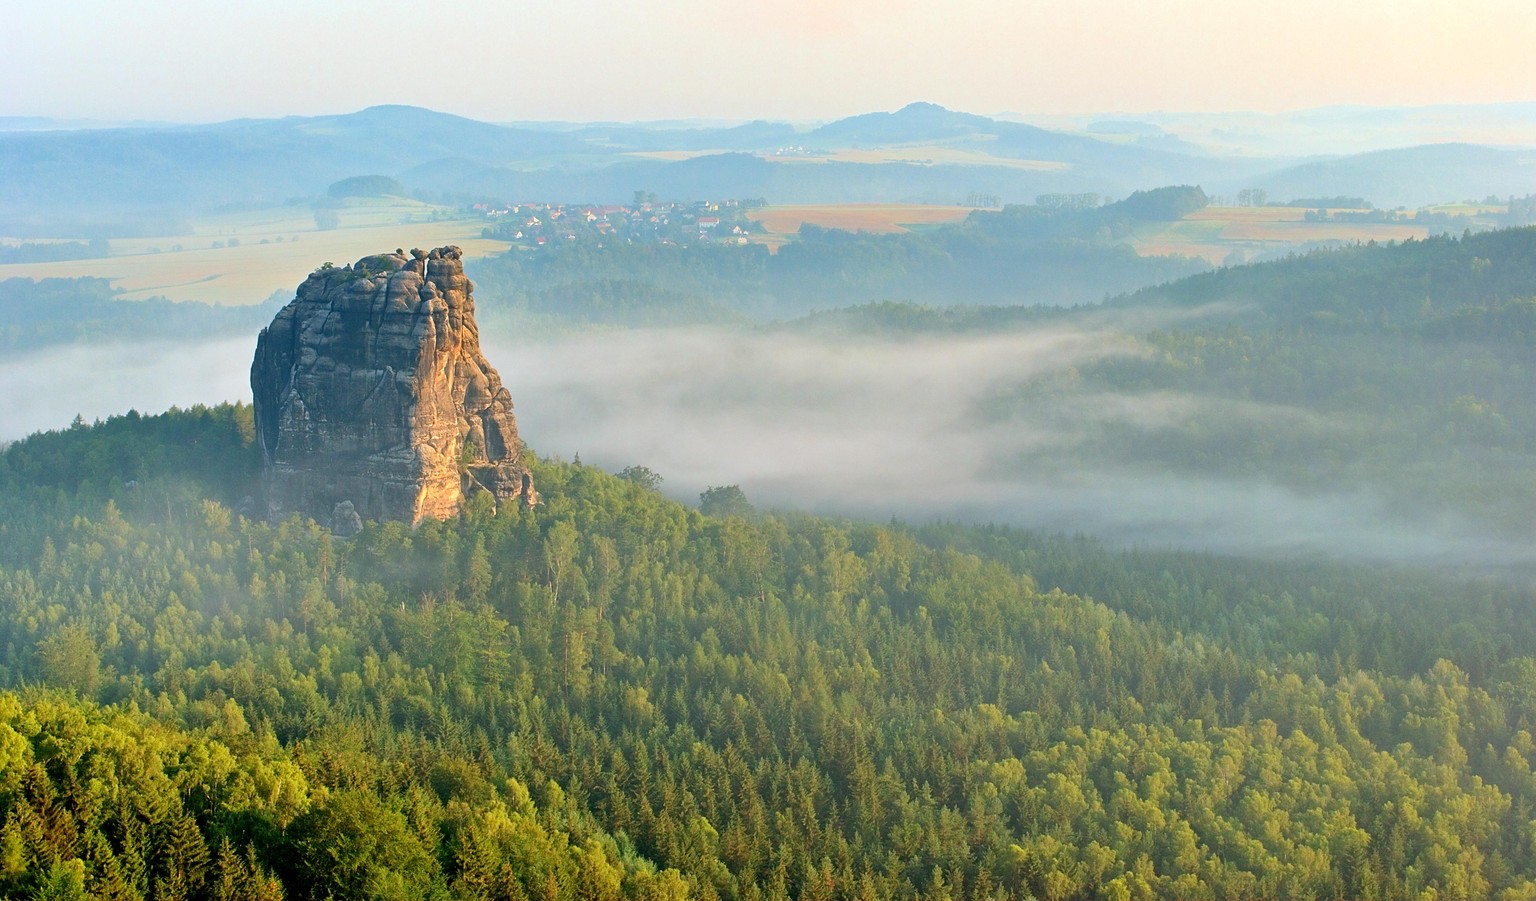 falkenstein rock, saxon switzerland, morning mist, elbsandsteingebirge